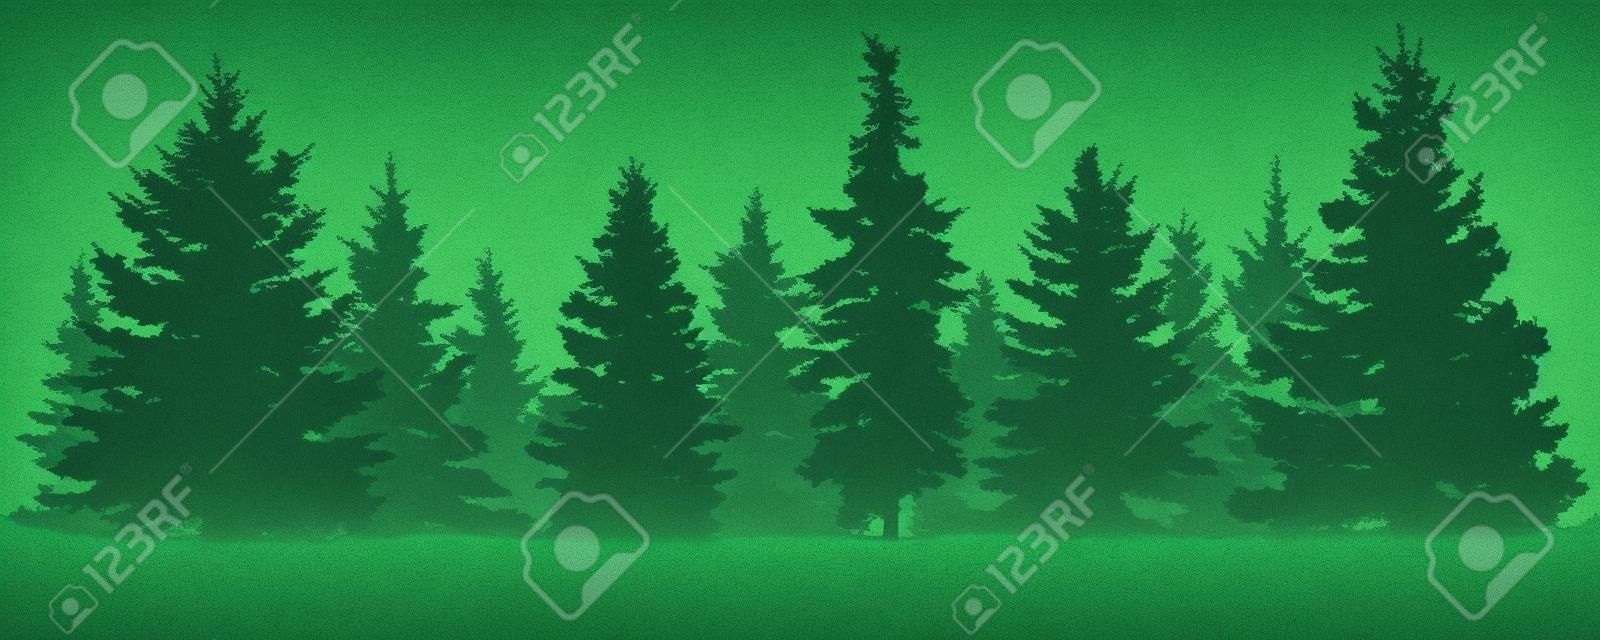 Bosque de abetos silueta. Abeto verde conífero. Vector sobre fondo blanco